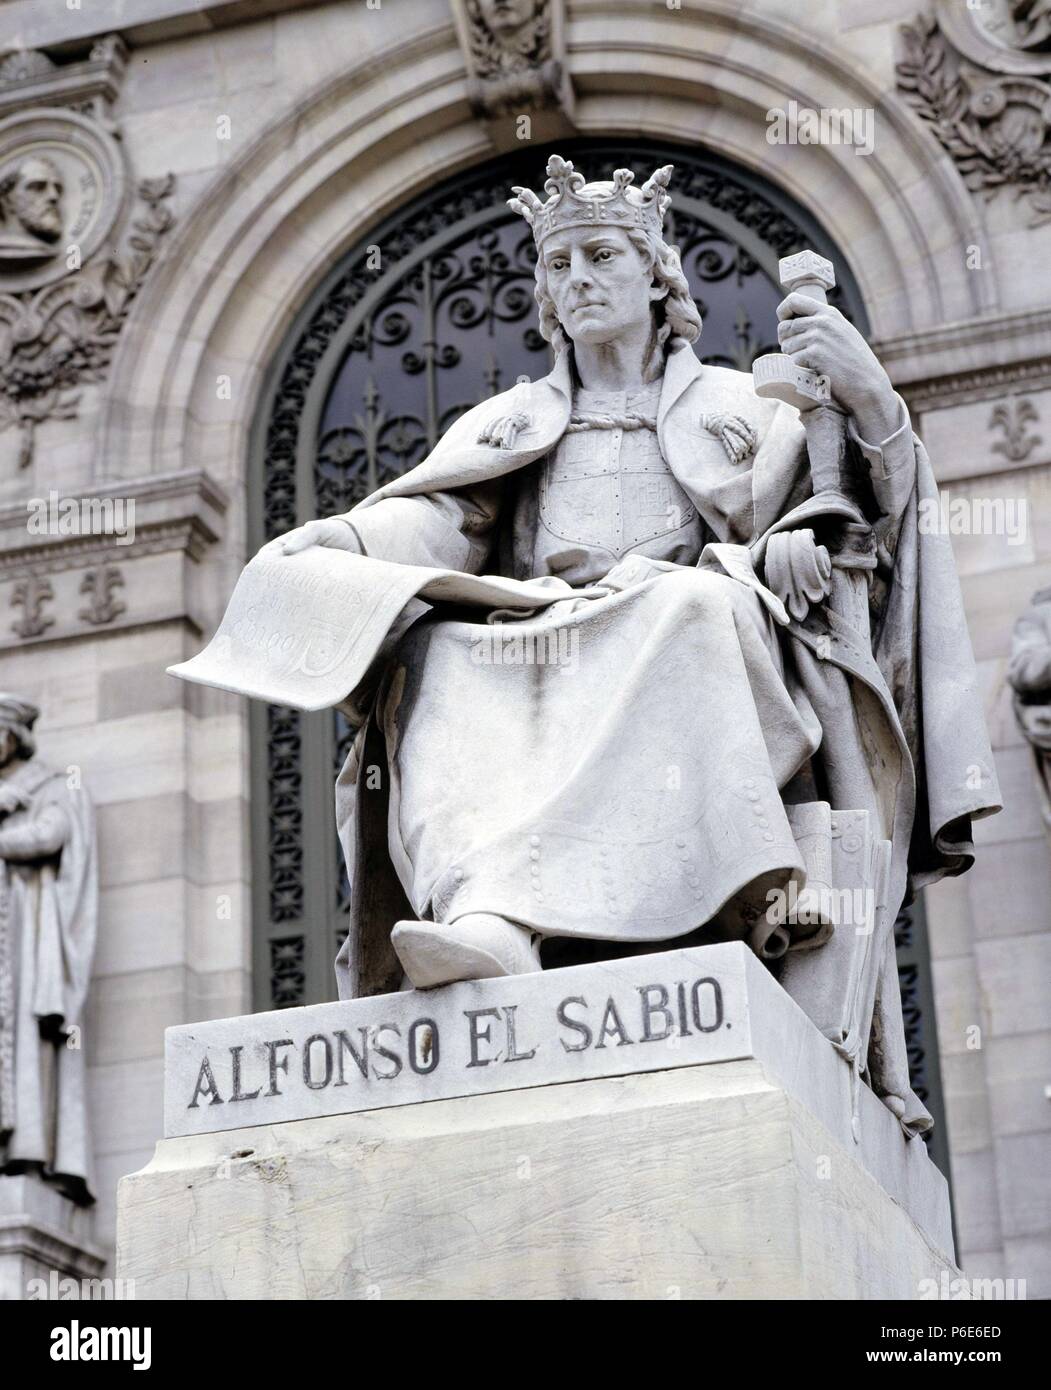 ALFONSO X el Sabio". REY DE CASTILLA Y LEON. 1221 - 1284. ESTATUA DE LA FACHADA DE LA Biblioteca Nacional. MADRID. OBRA DE JOSE ALCOVERRO. Stockfoto